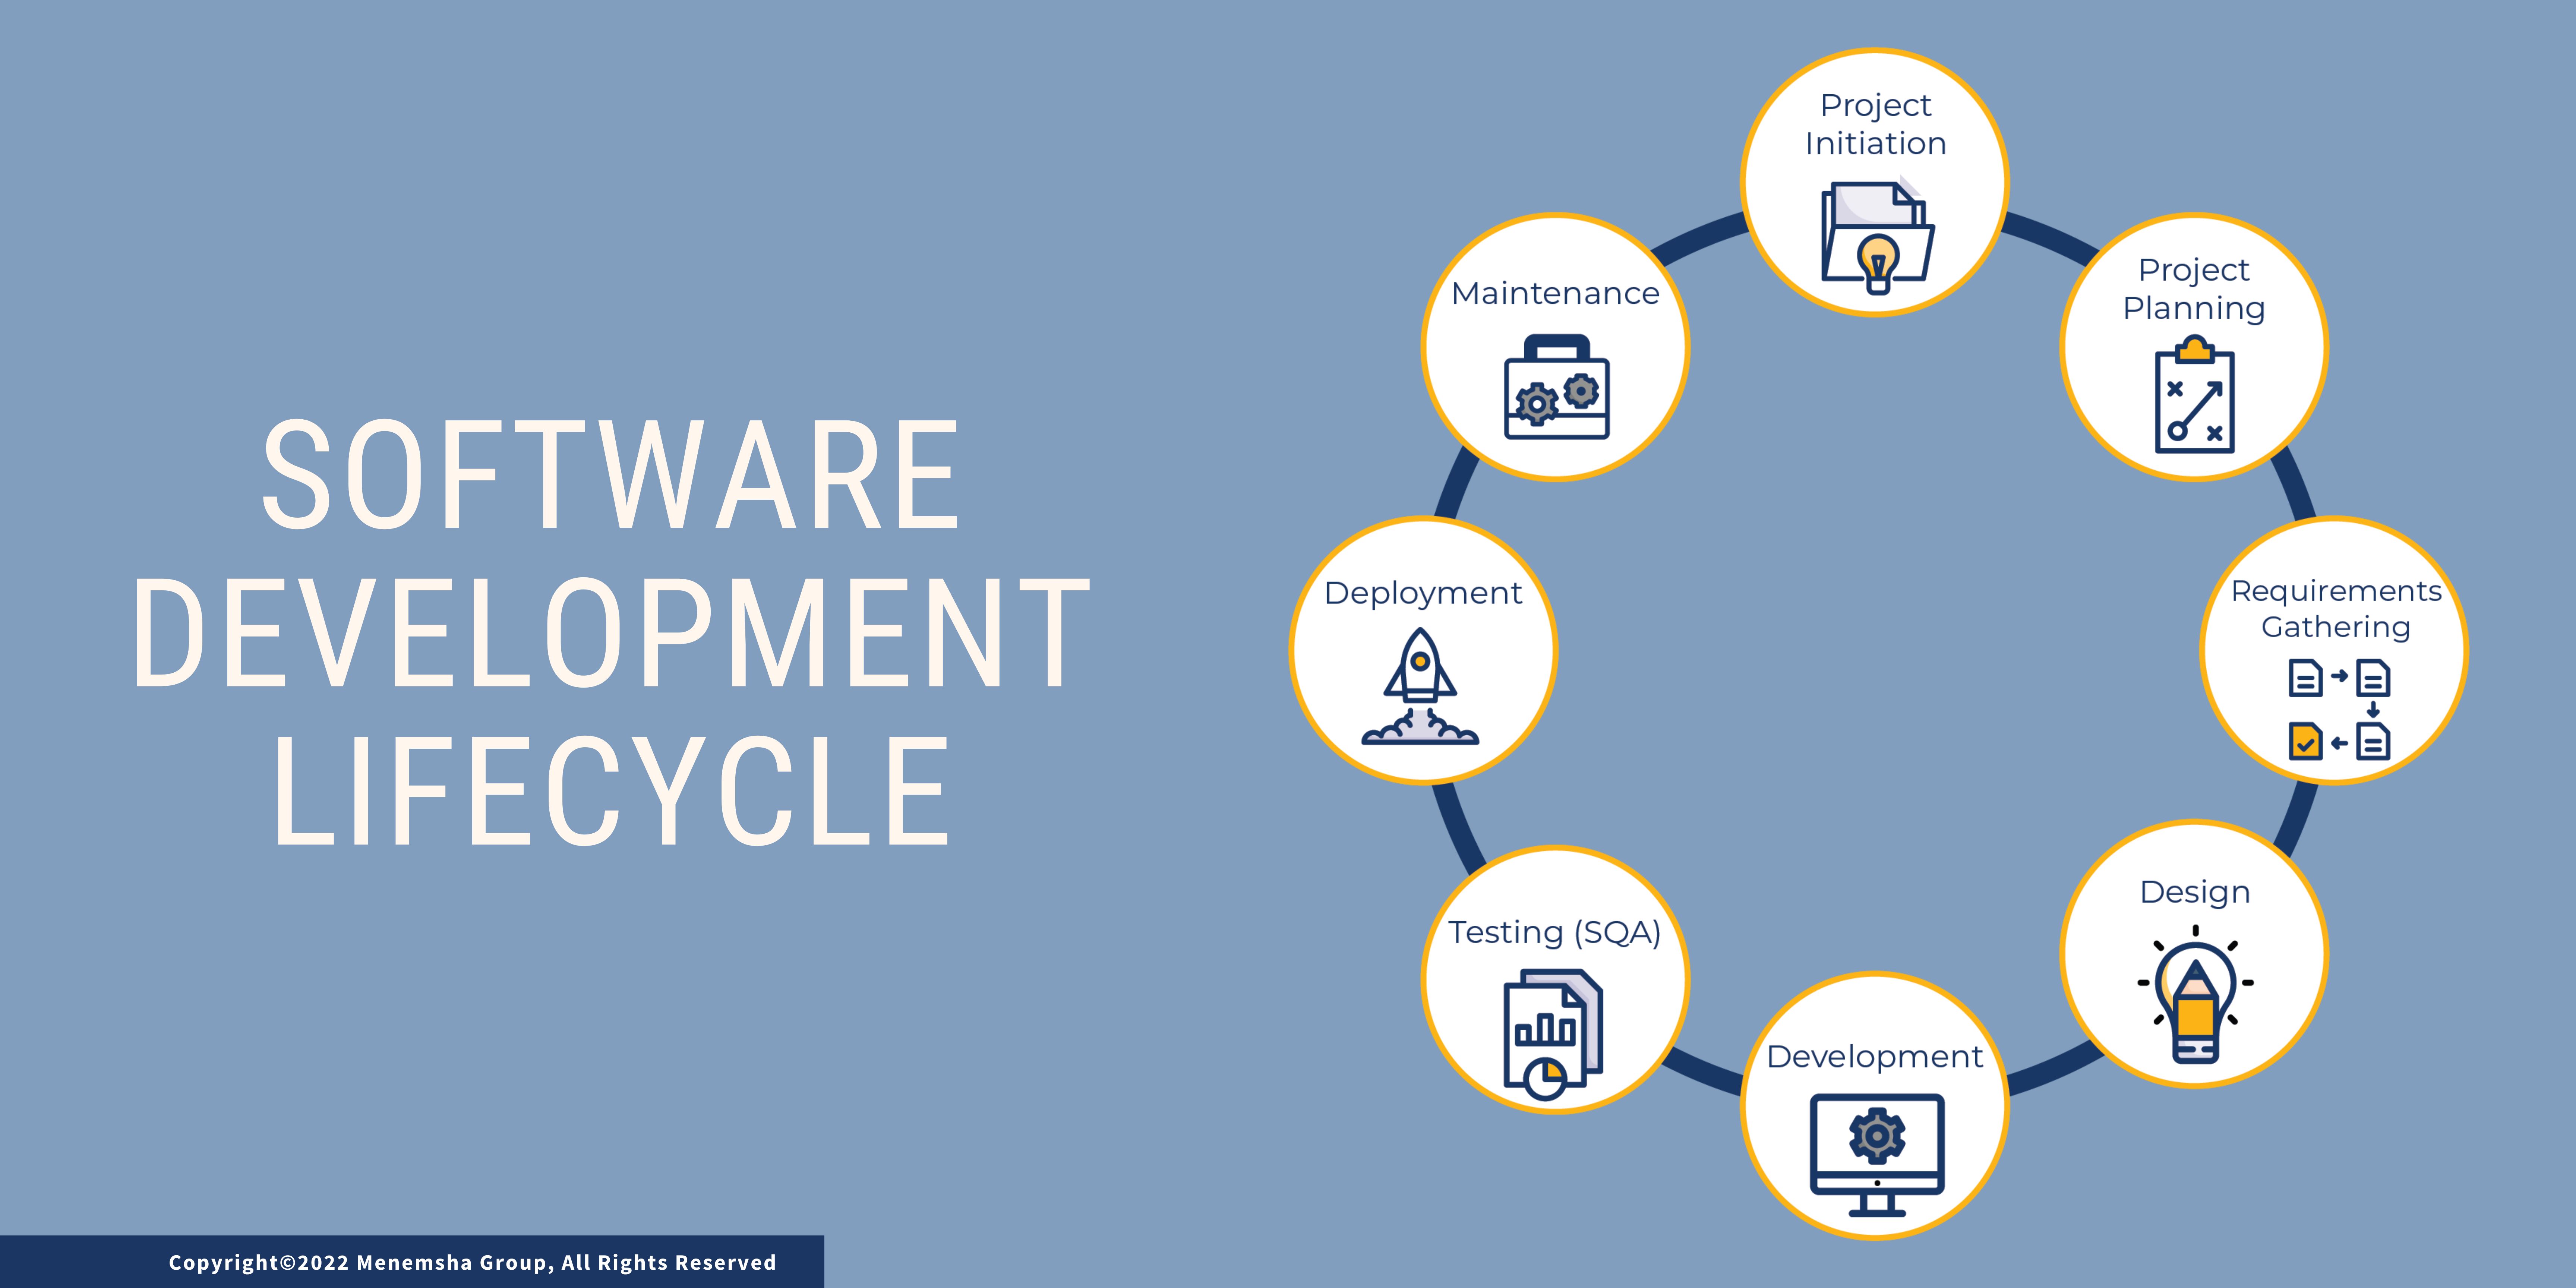 Understanding the Software Development Lifecycle (SDLC)